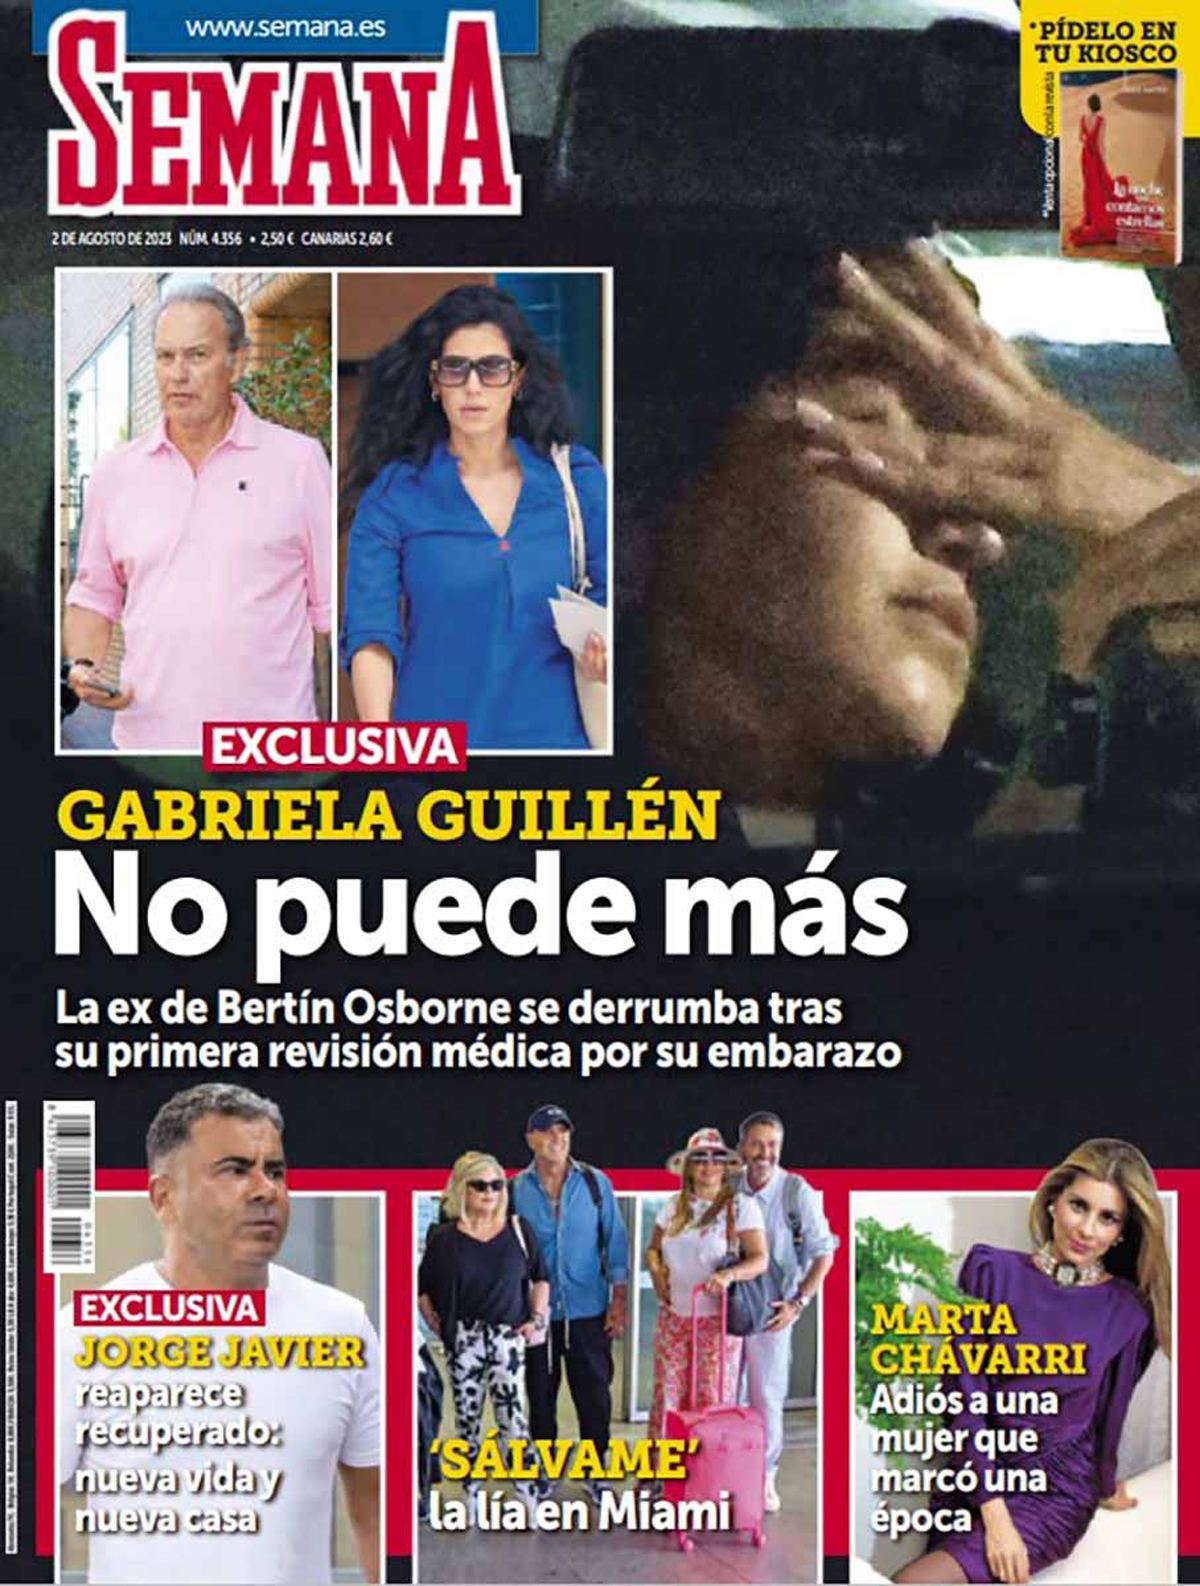 Gabriela Guillén llora en plena calle tras salir de una revisión médica